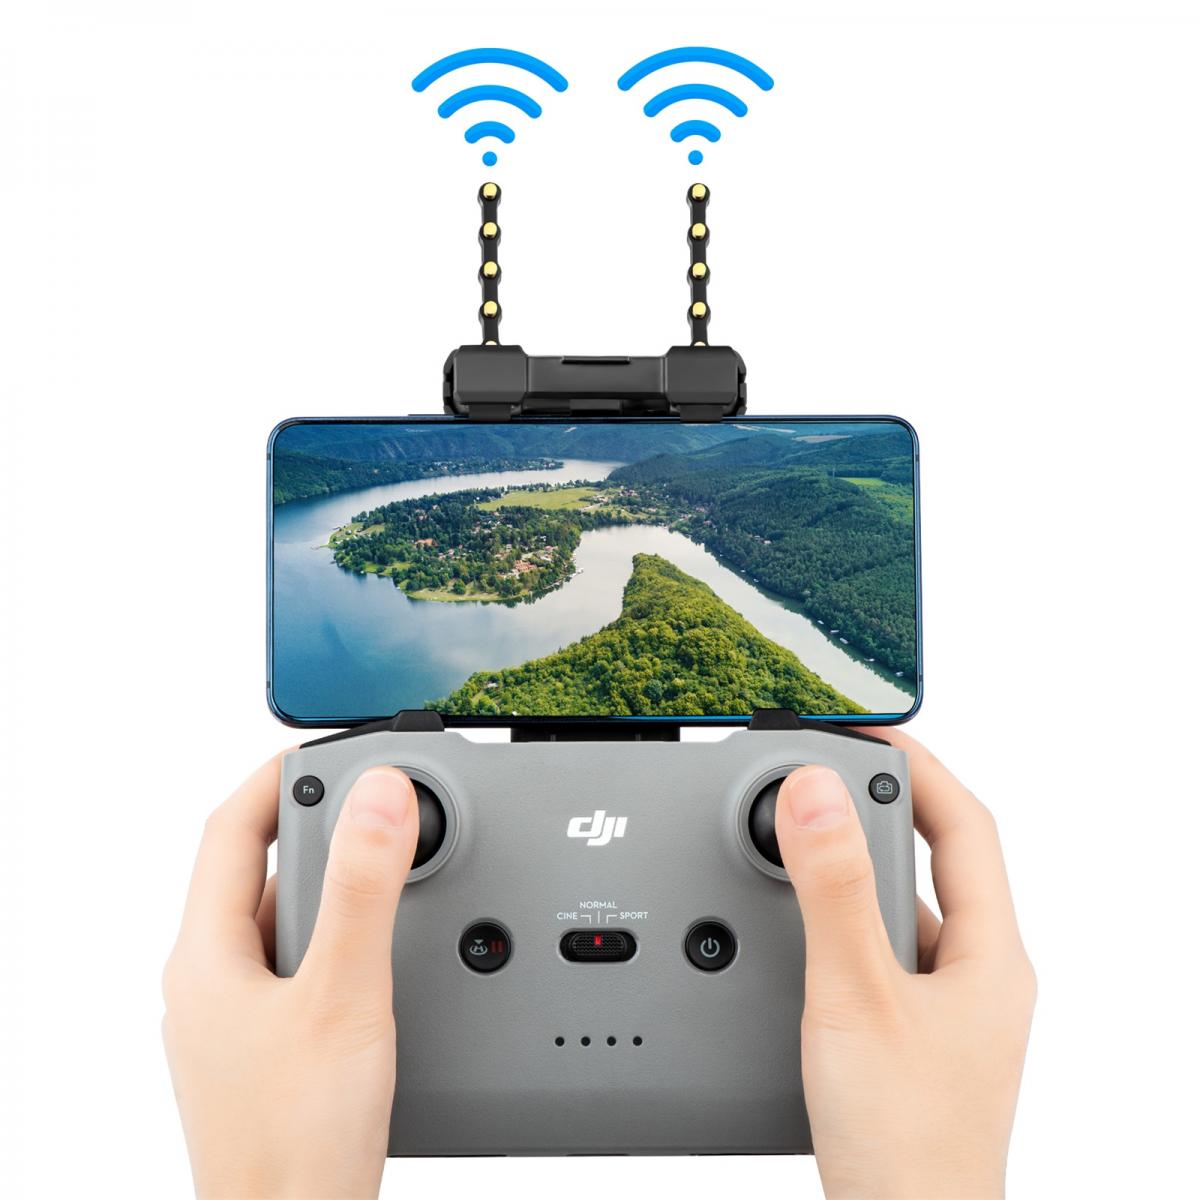 Drones,Yagi – Kit d'antenne pour DJI Mini 2, accessoires, Booster